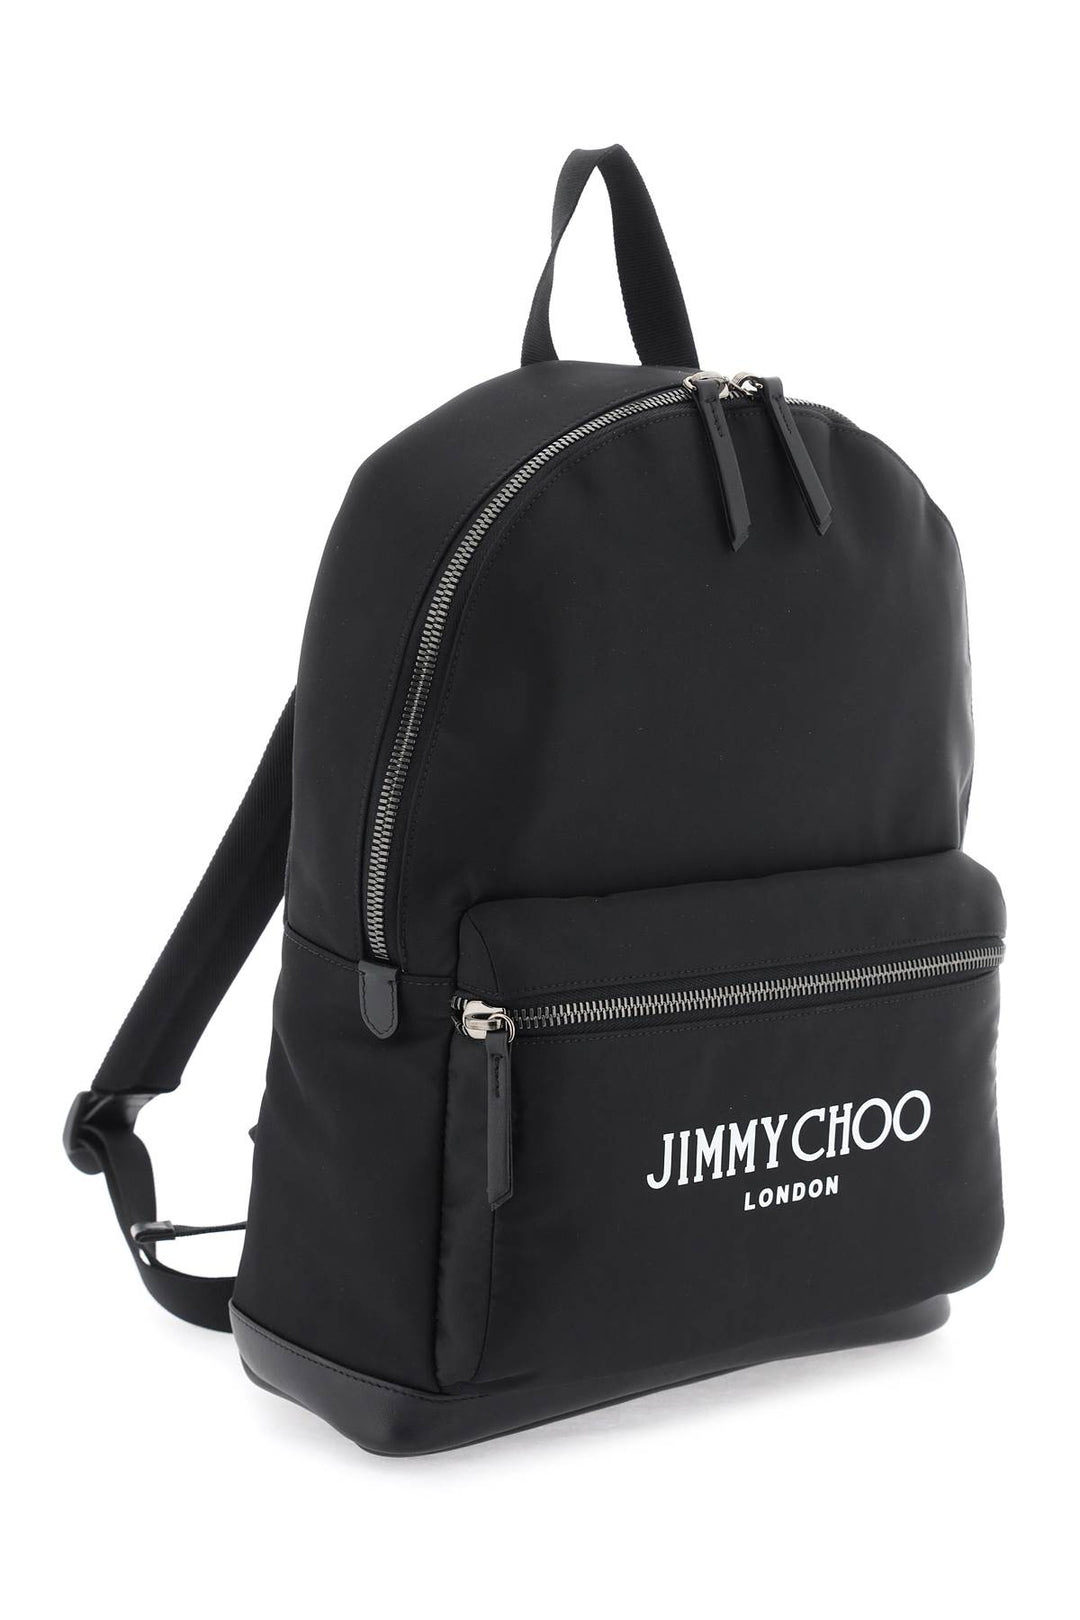 Jimmy Choo Wilmer Backpack   Nero